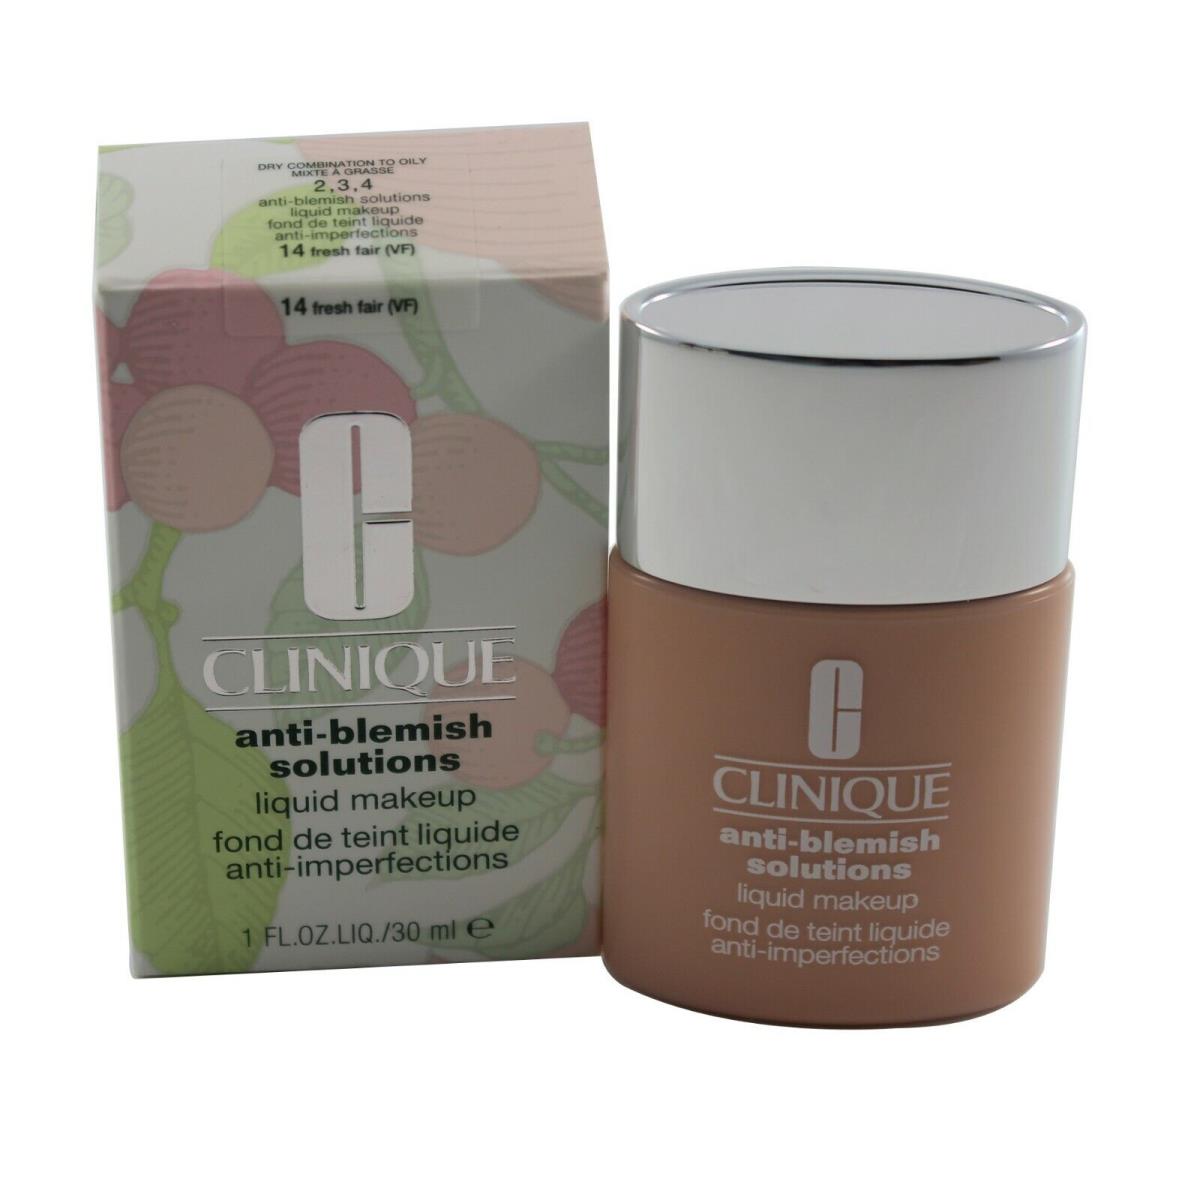 Clinique Anti Blemish/acne Solutions Liquid Makeup Choose Shade 14 Fresh Fair